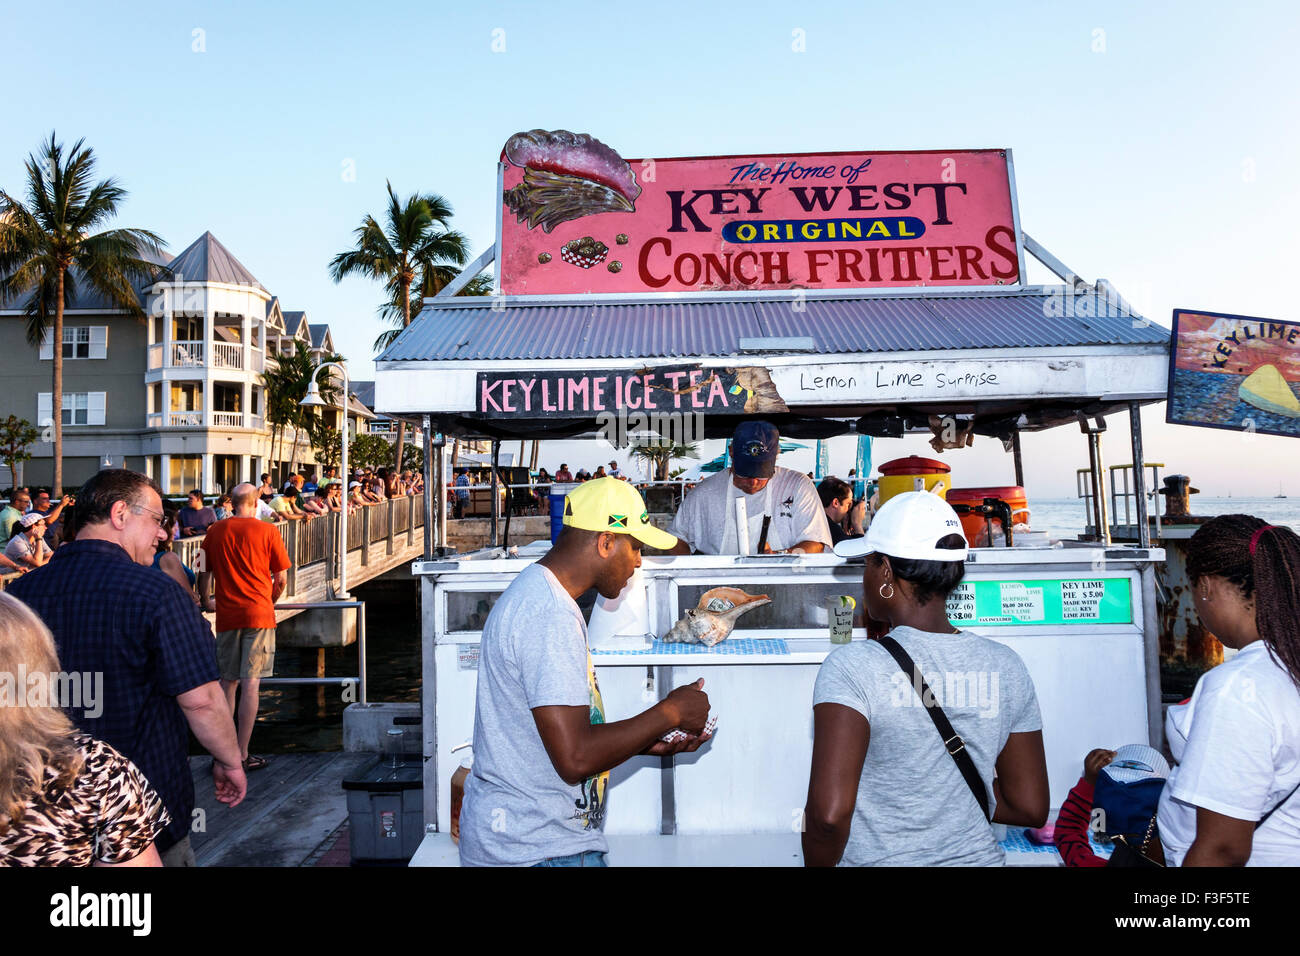 Key West Florida, Keys Mallory Square Dock, Sonnenuntergangsfeier, Festival, Imbiss, Stände, Stand, Stände, Verkäufer, Verkäufer, Conch-Krabben, Einzelhandelsprodukte, disp Stockfoto